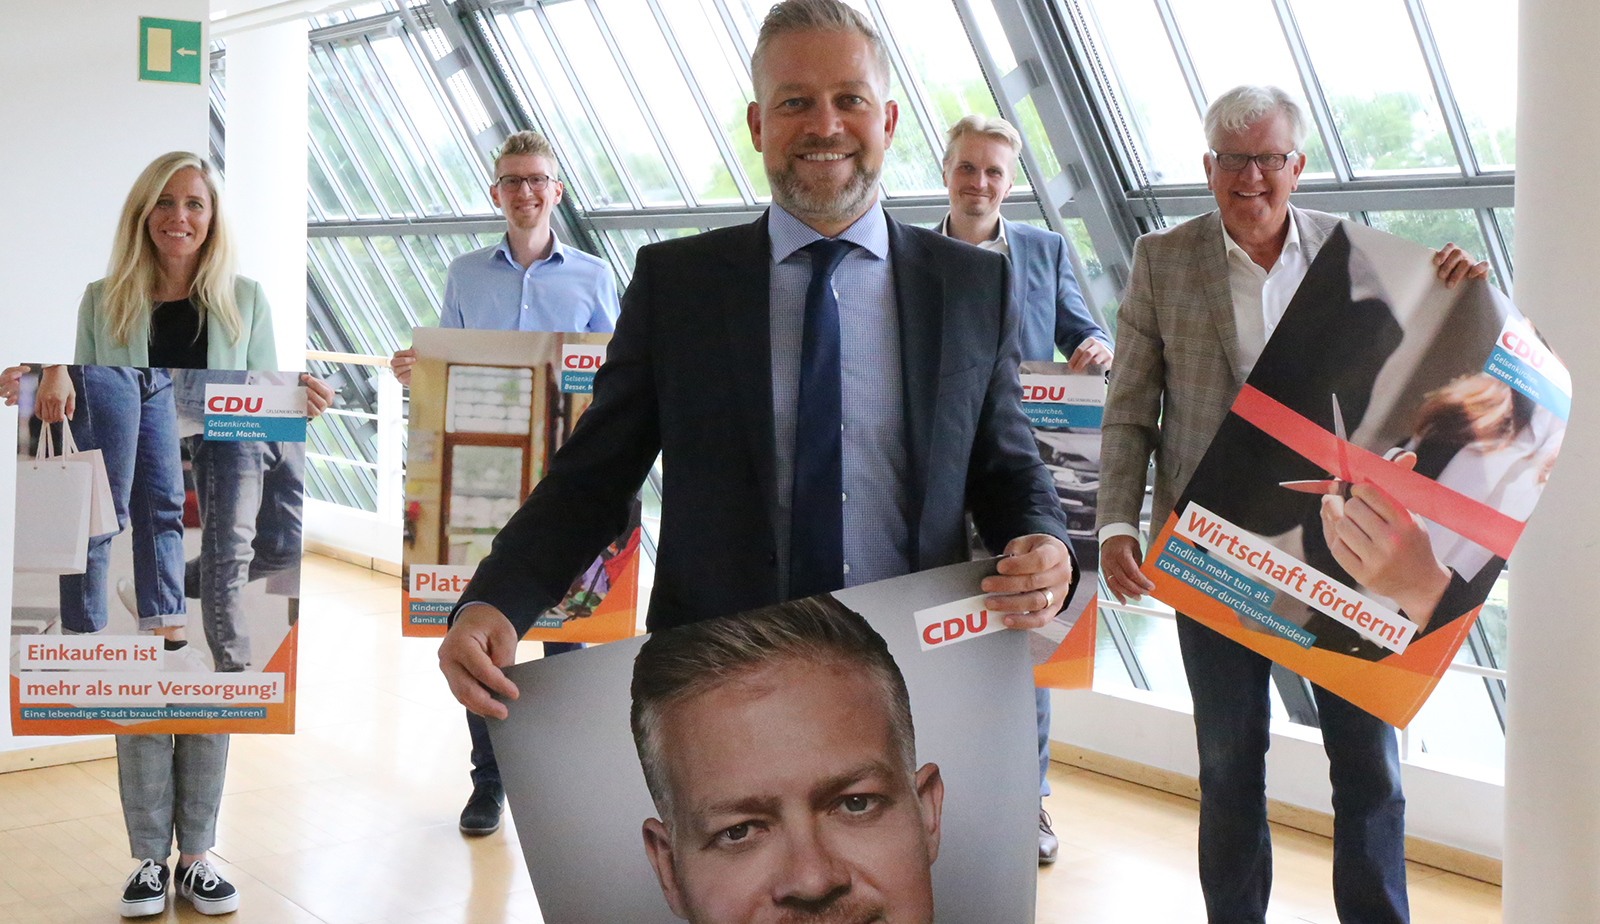 Die CDU präsentierte ihre Wahlkampf-Kampagne. –Foto: Spernol